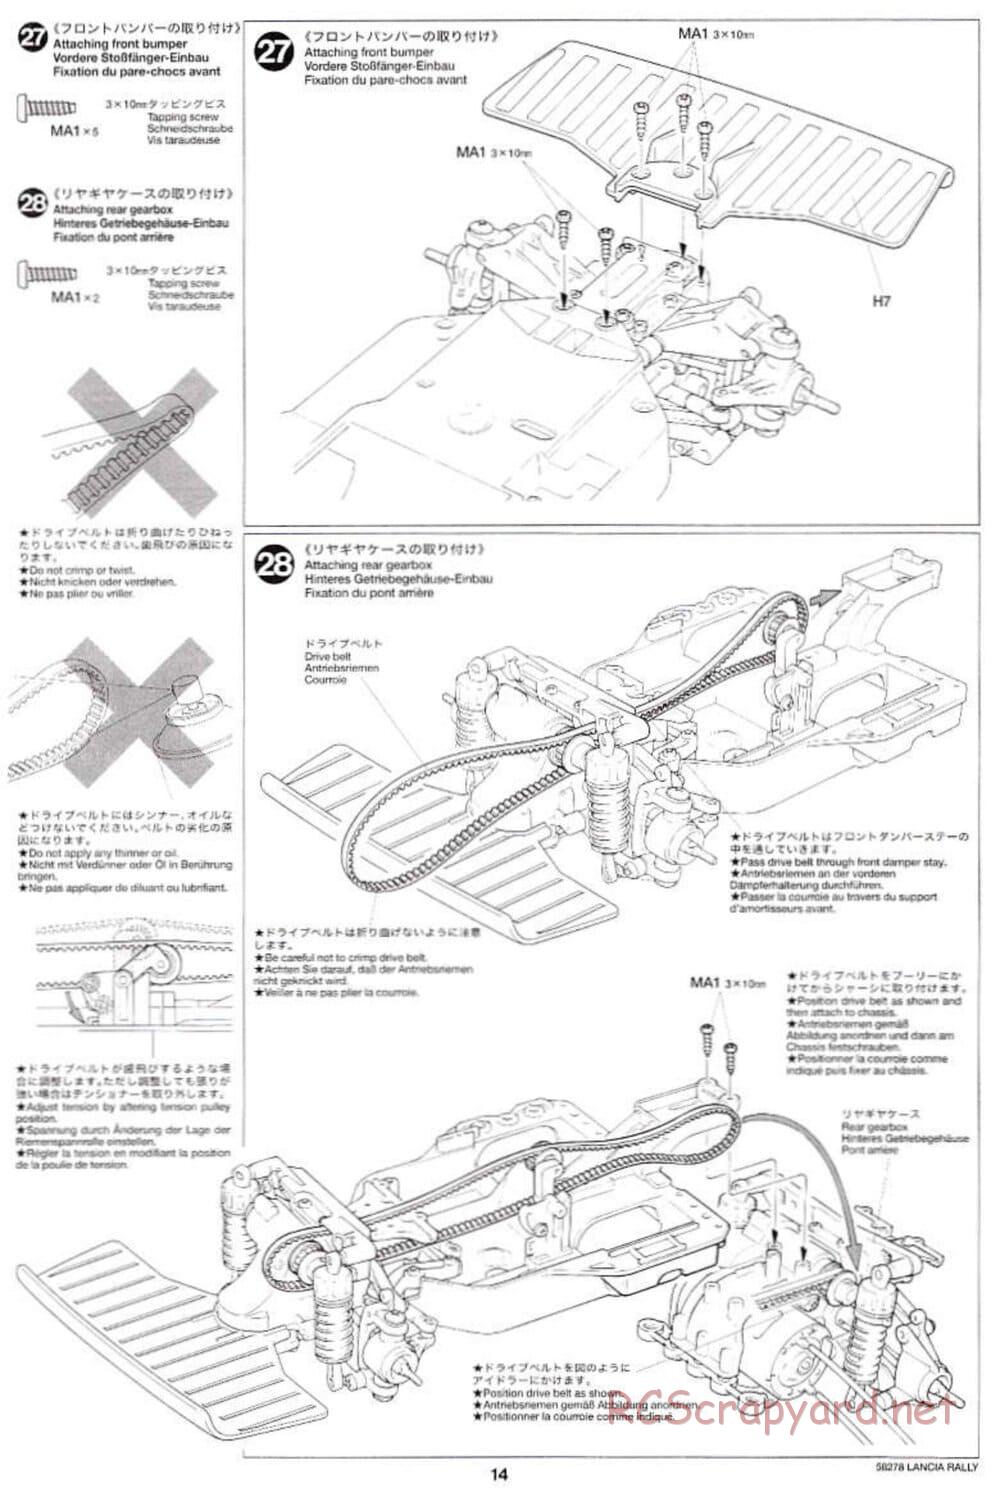 Tamiya - Lancia 037 Rally - TA-03RS Chassis - Manual - Page 14